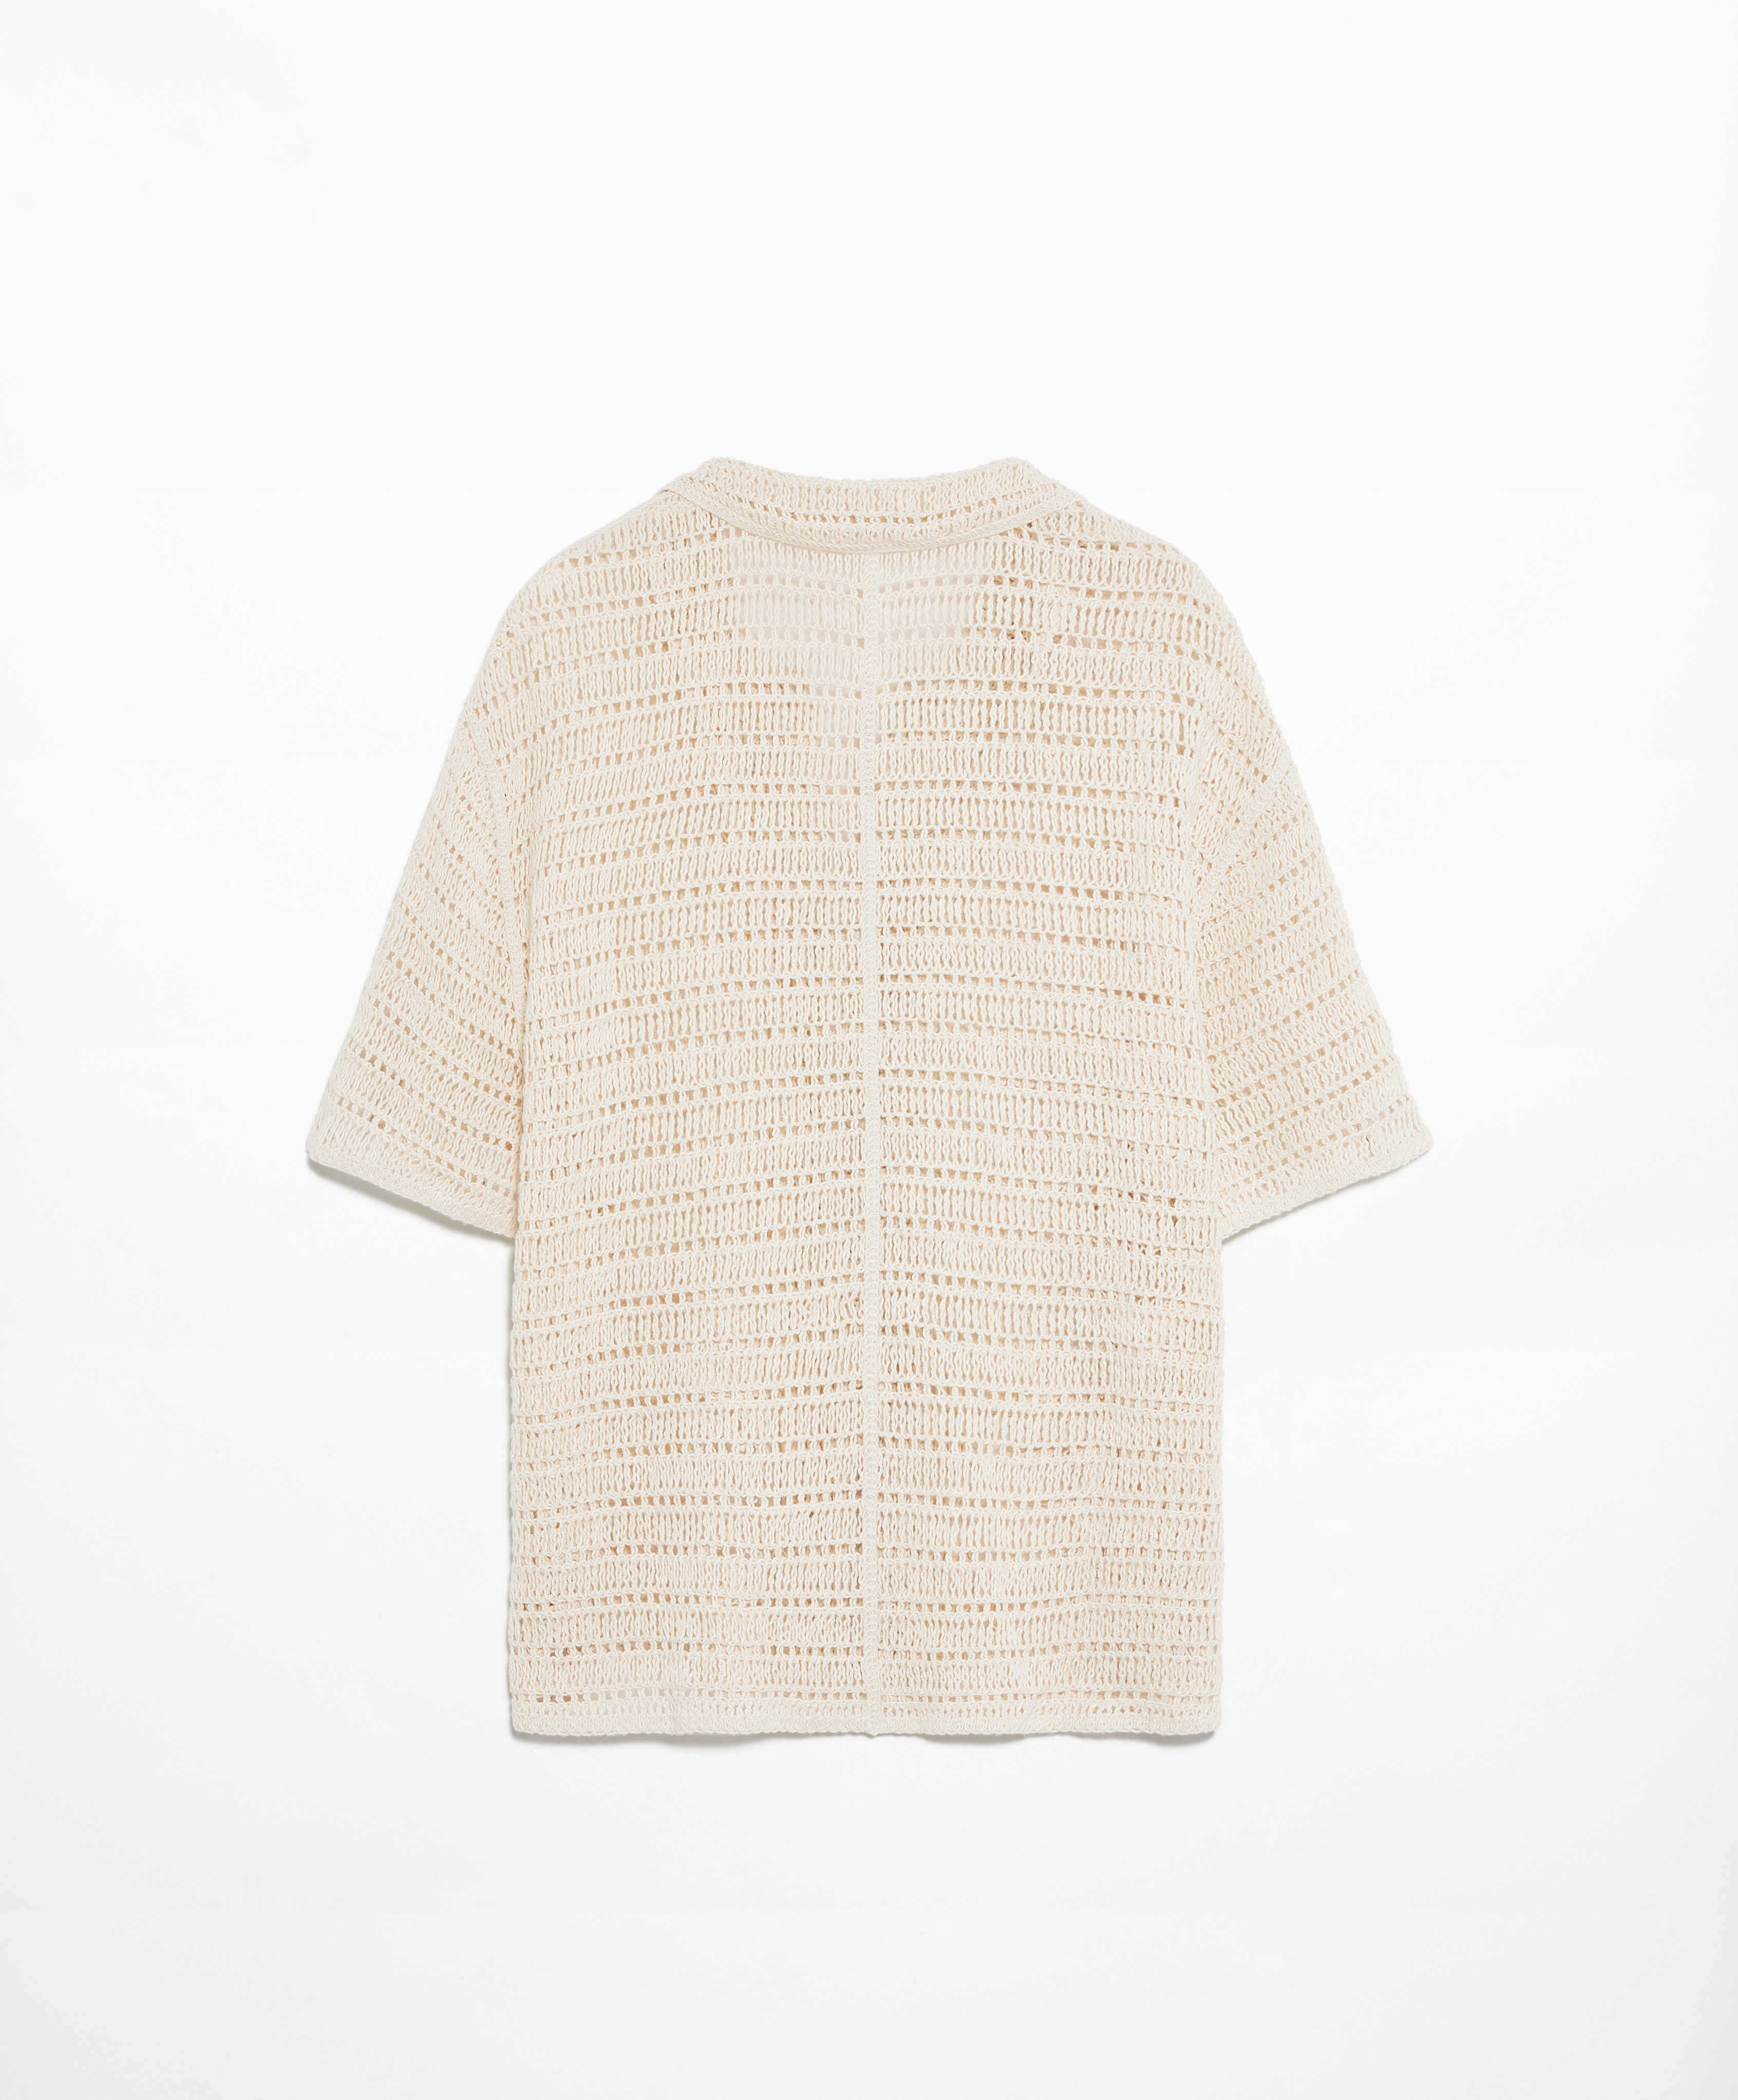 Camisa manga corta crochet bordado